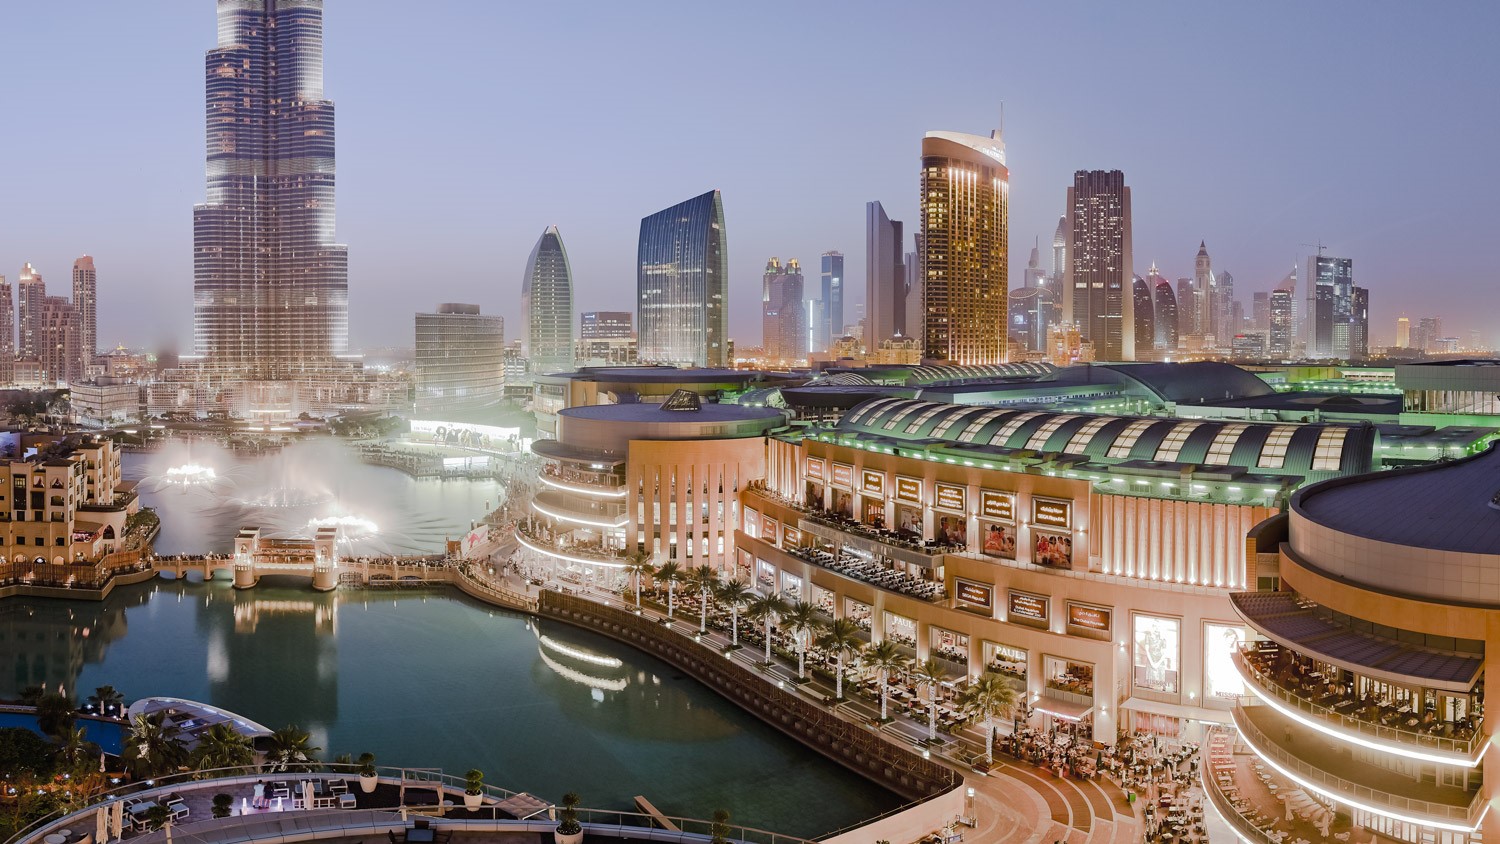 ۷ شب اقامت در یکی از هتل های دبی بالای ۱۲۳ میلیون تومان می شود! + جدول